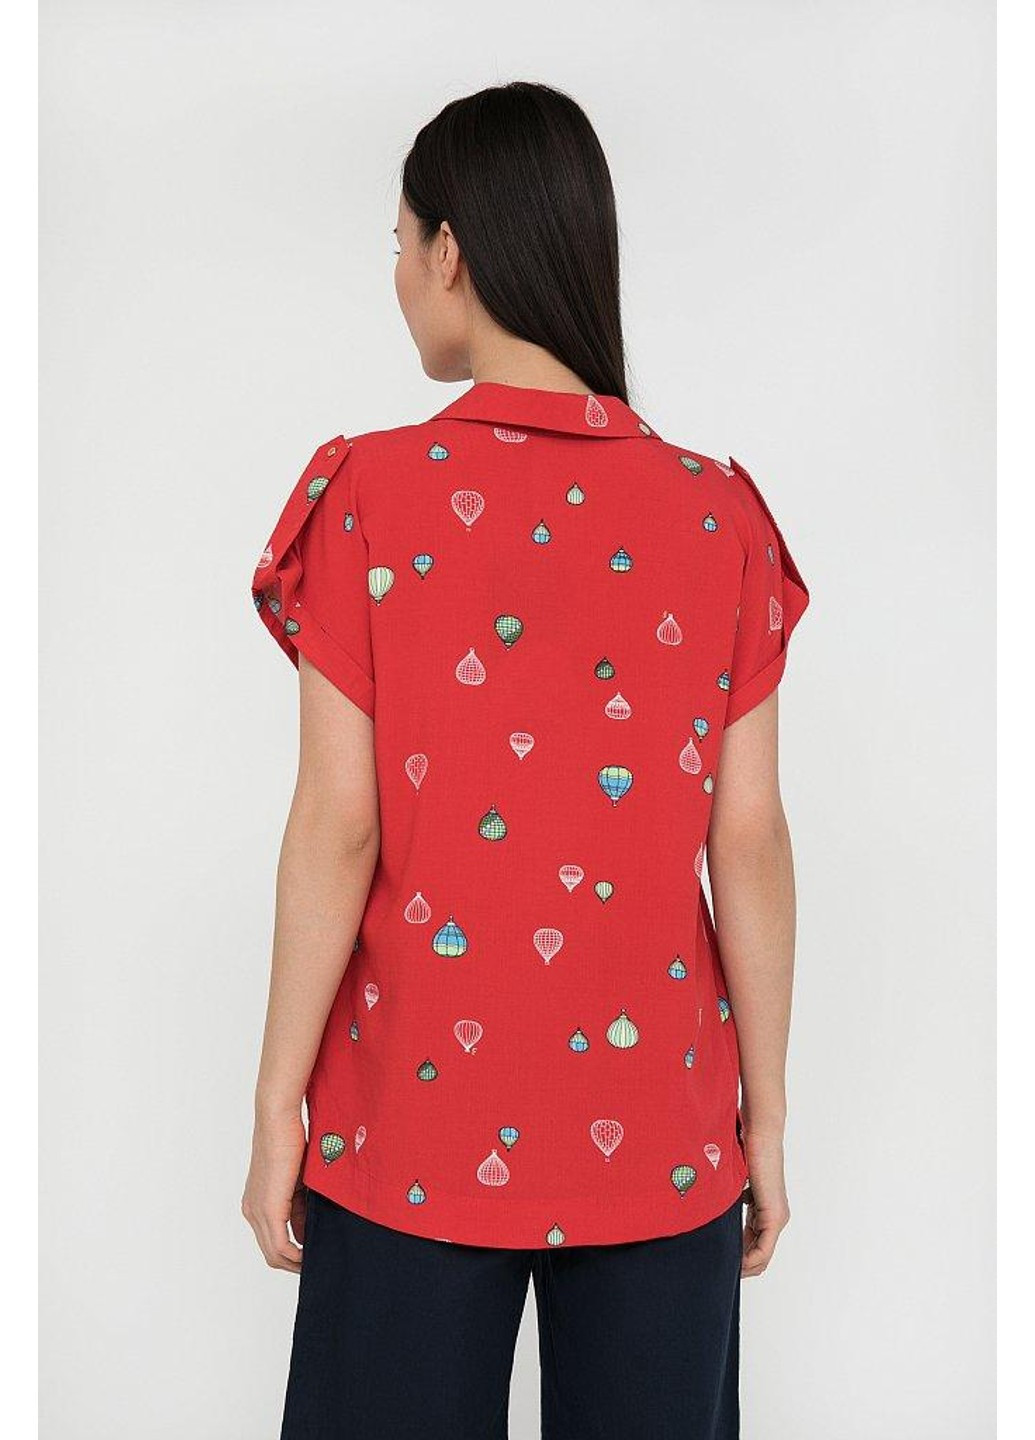 Красная летняя блуза s20-14094-341 Finn Flare